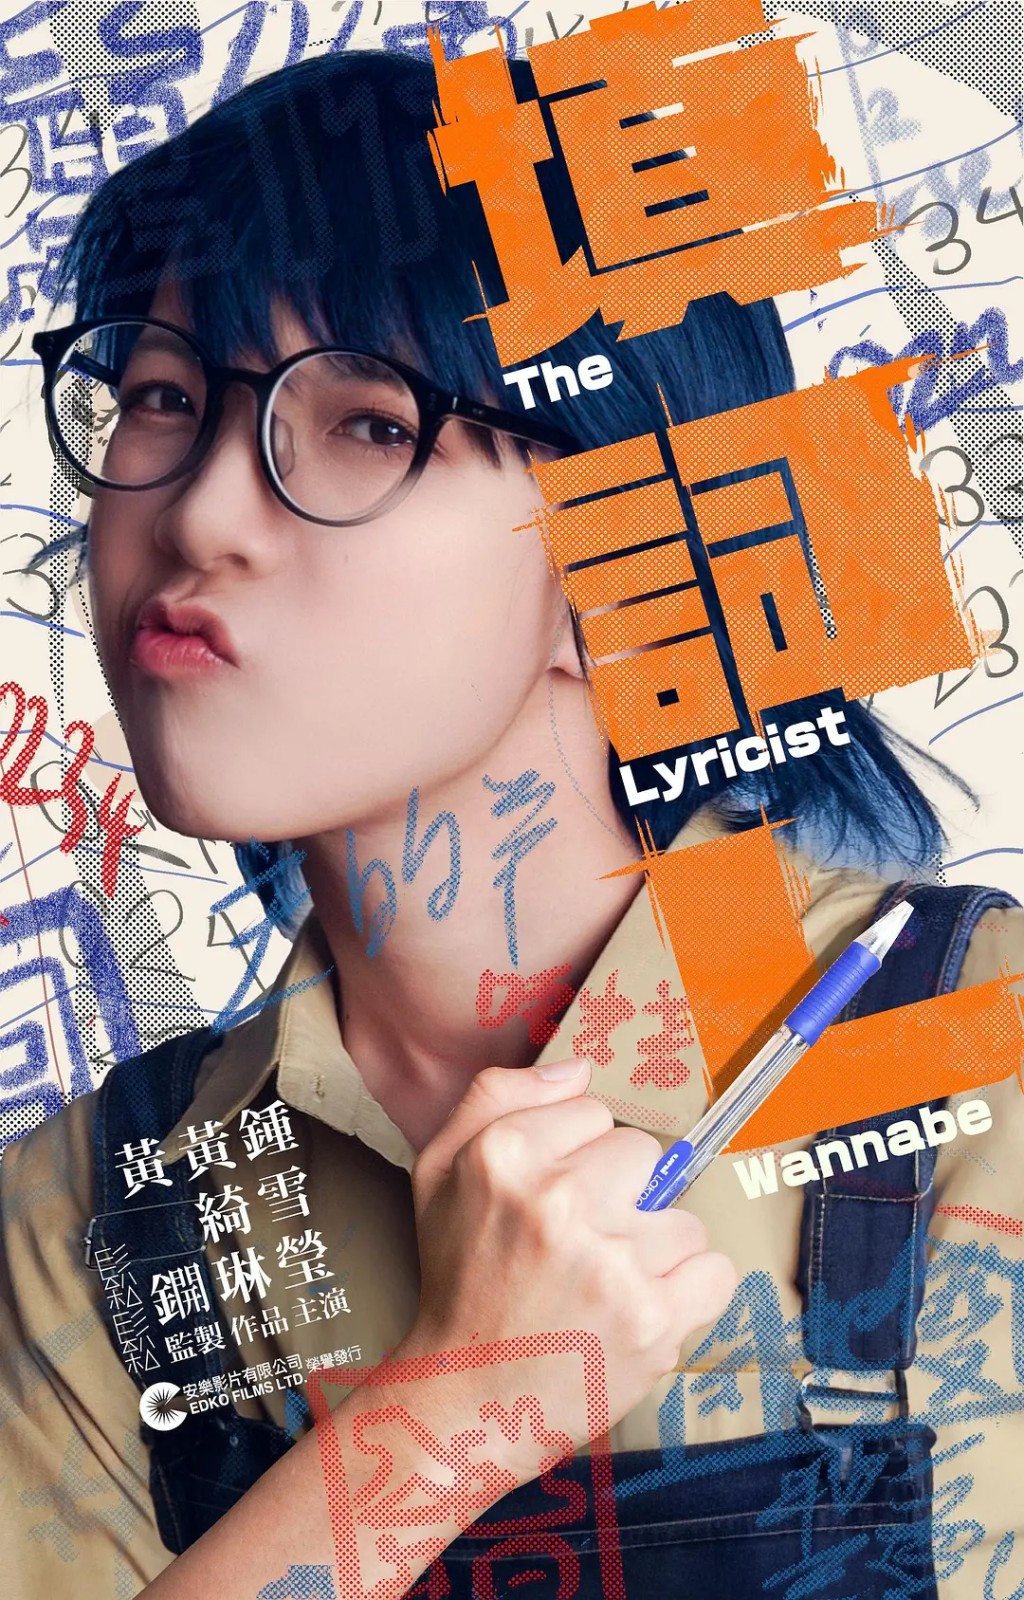 《填词L》获得台湾评审青睐。